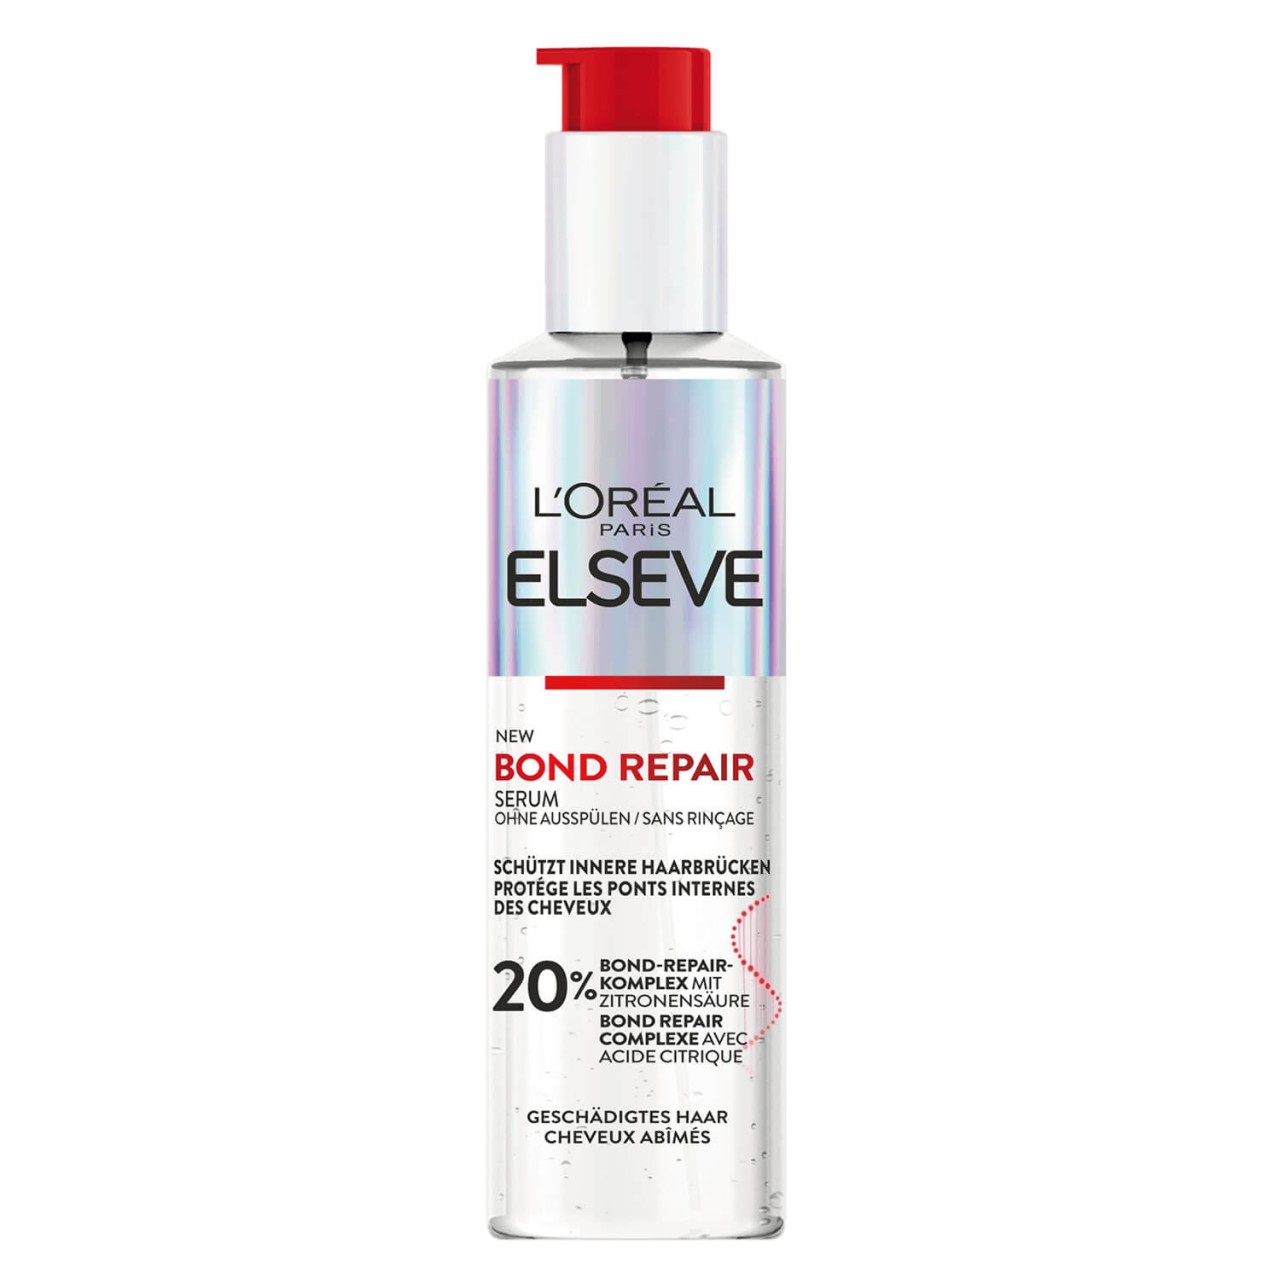 LOréal Elseve Haircare - Bond Repair Serum von L'Oréal Paris